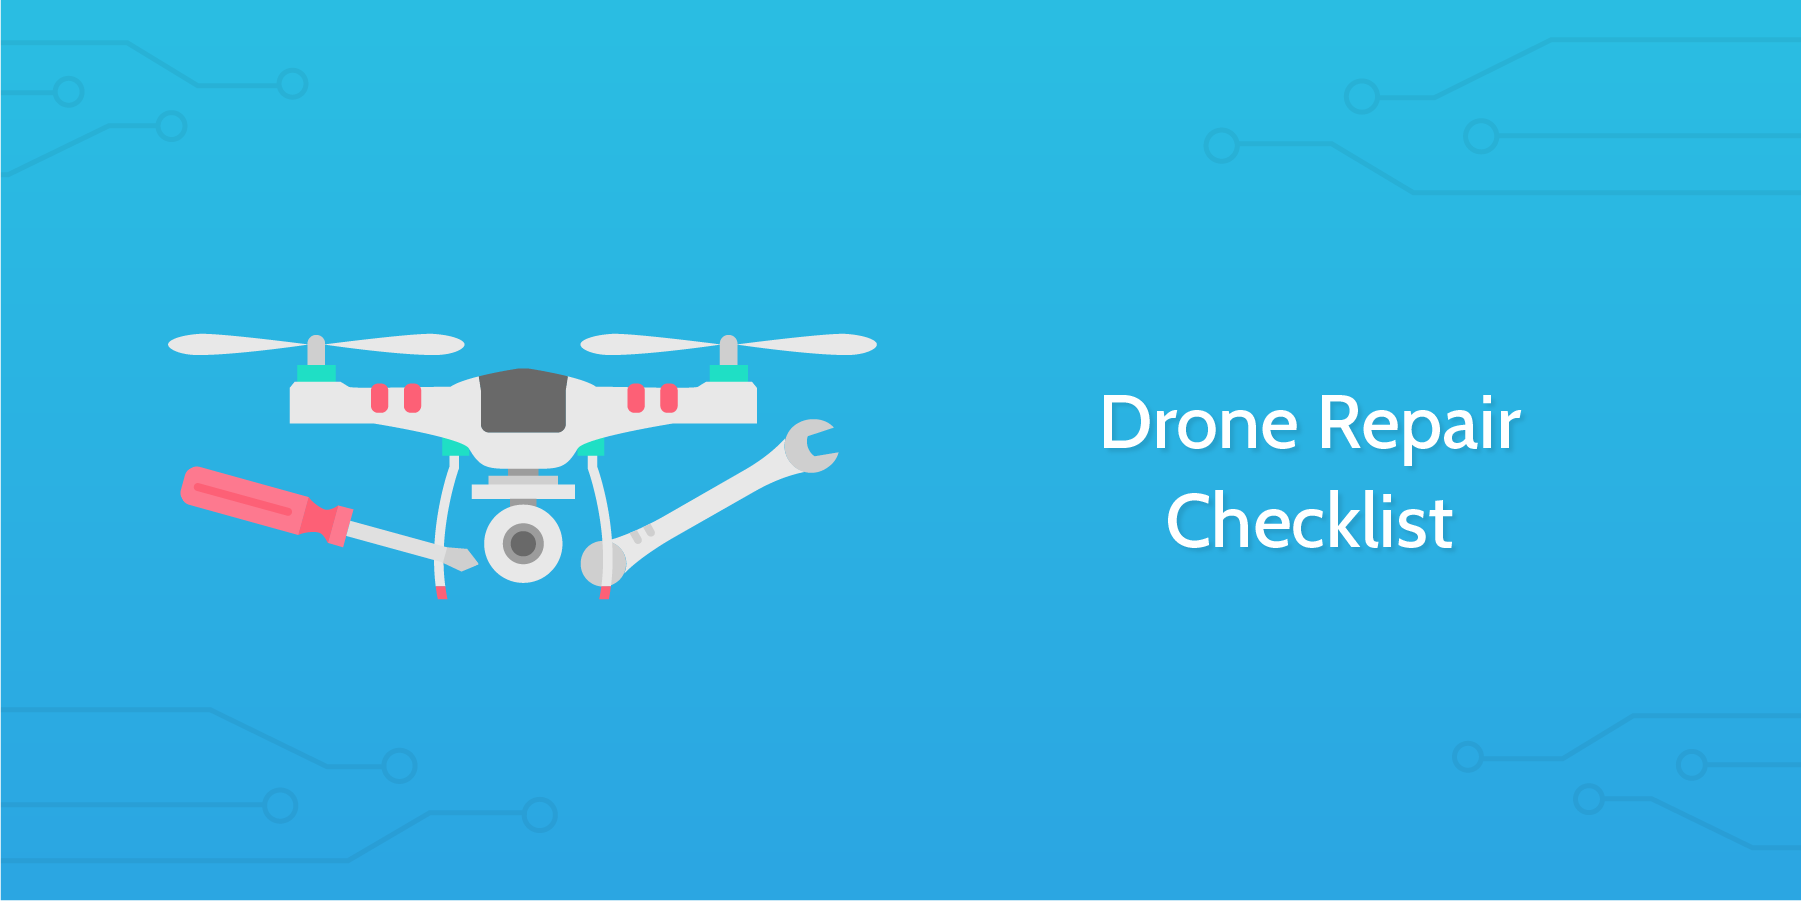 Drone Repair Checklist